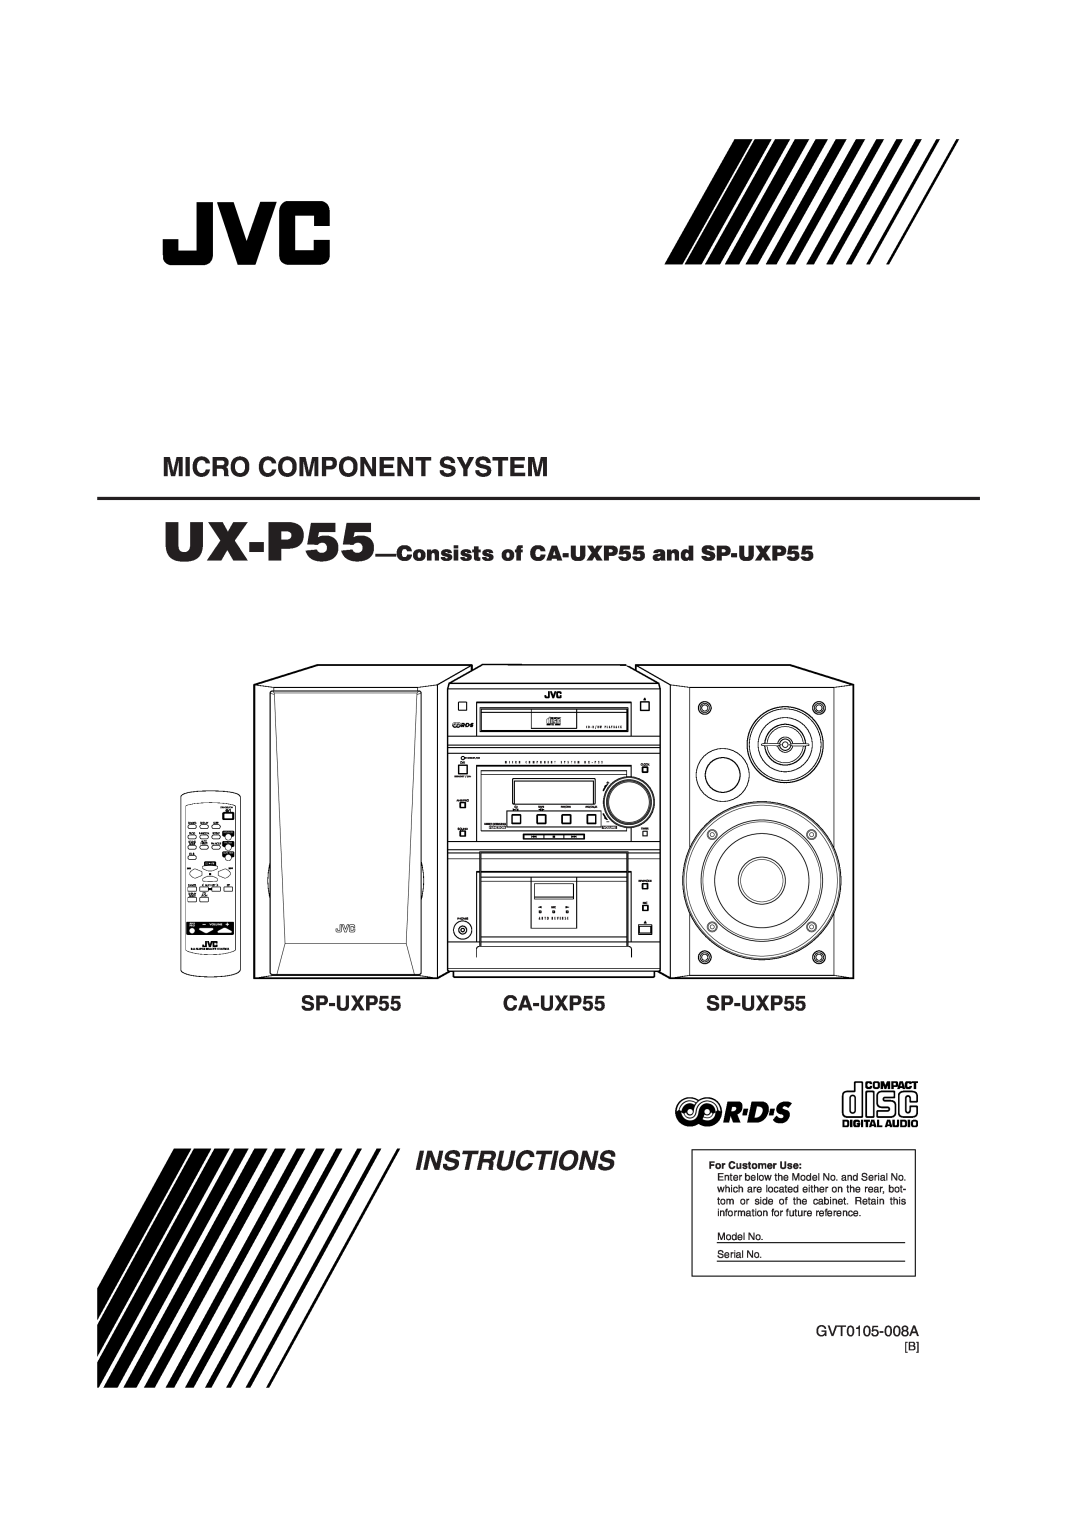 JVC manual Micro Component System, UX-P55-Consistsof CA-UXP55and SP-UXP55, CA-UXP55SP-UXP55, GVT0105-008A, Instructions 